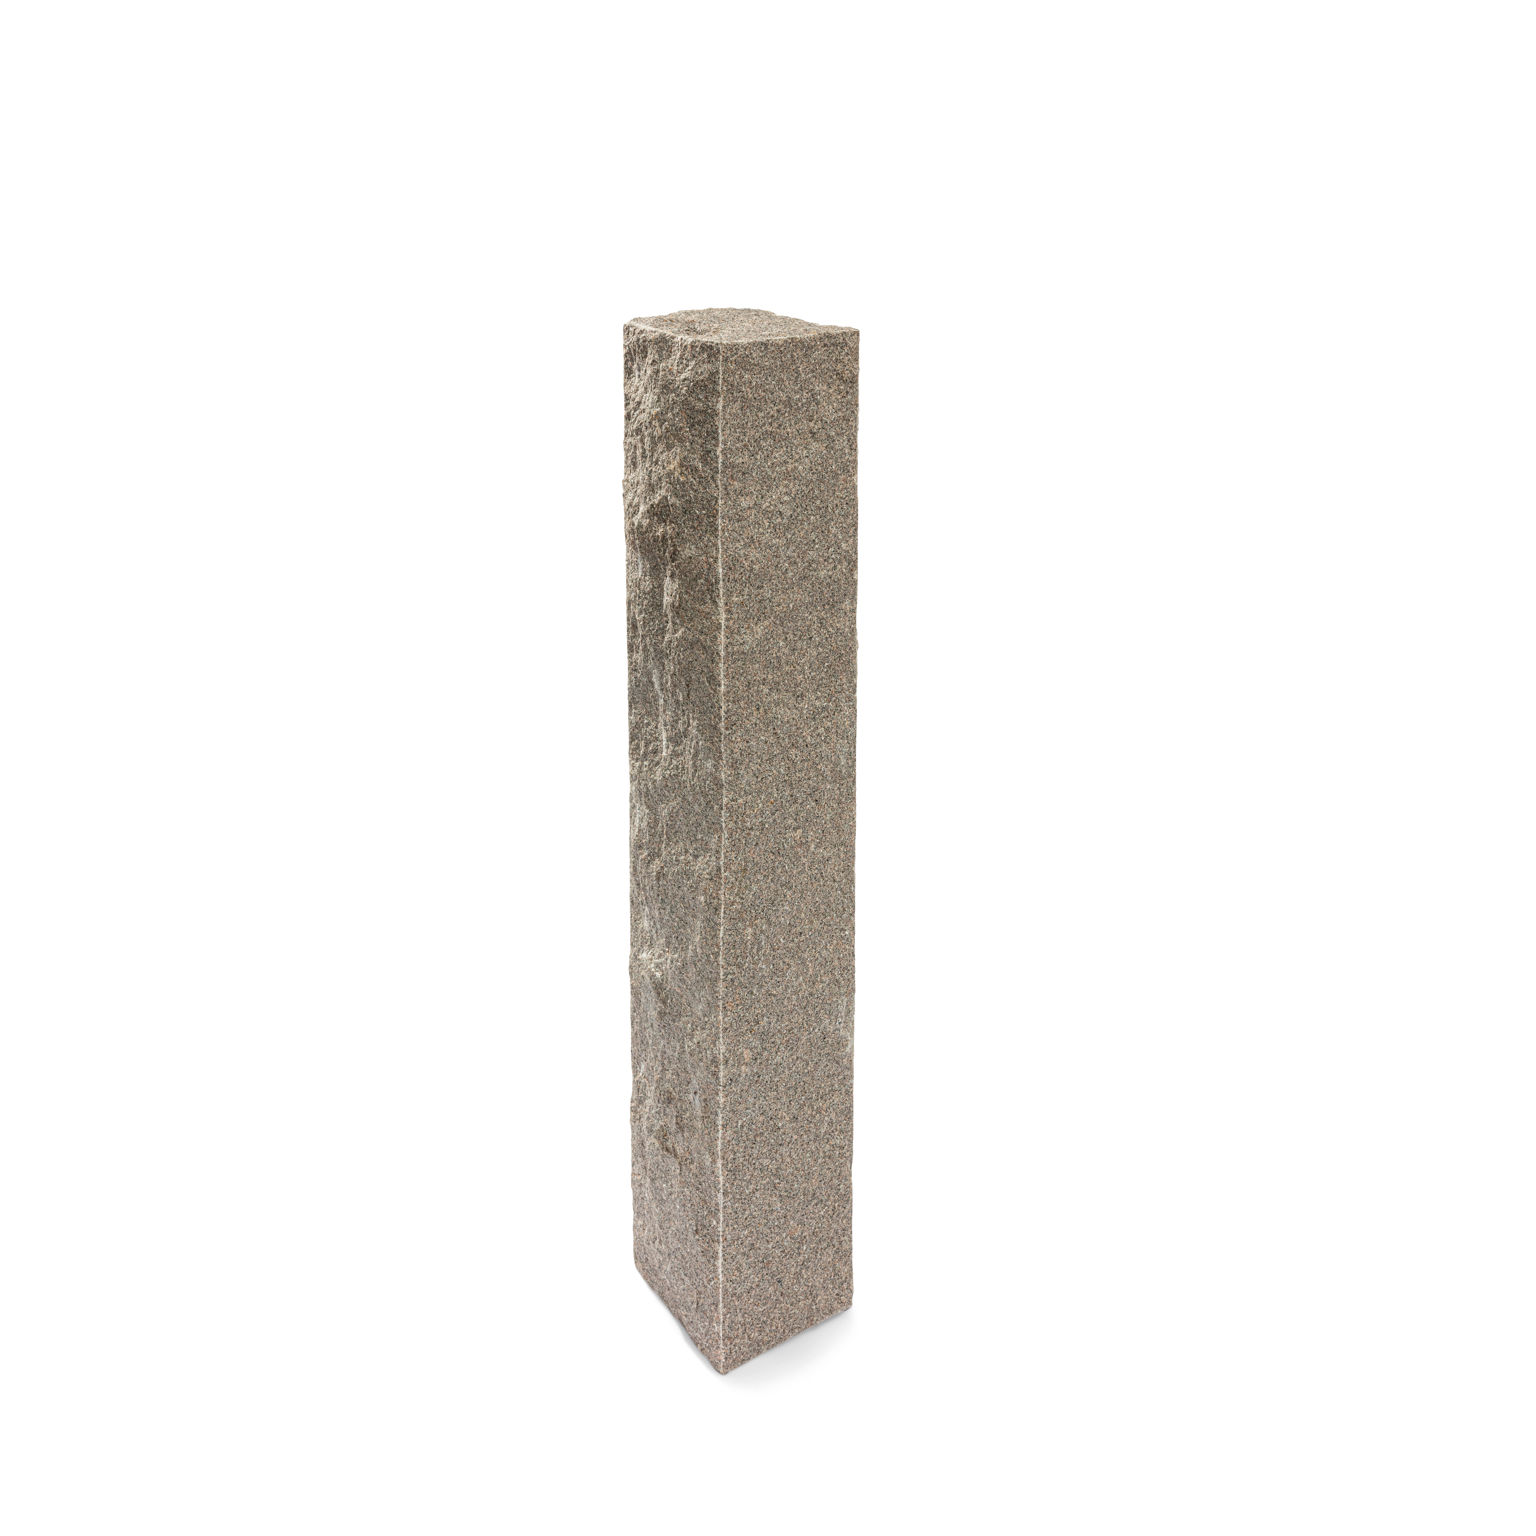 Produktbild på en stolpe i Bohus grå;granit. Stolpen har ett råkilat utförande och mäter 1500x300x300.